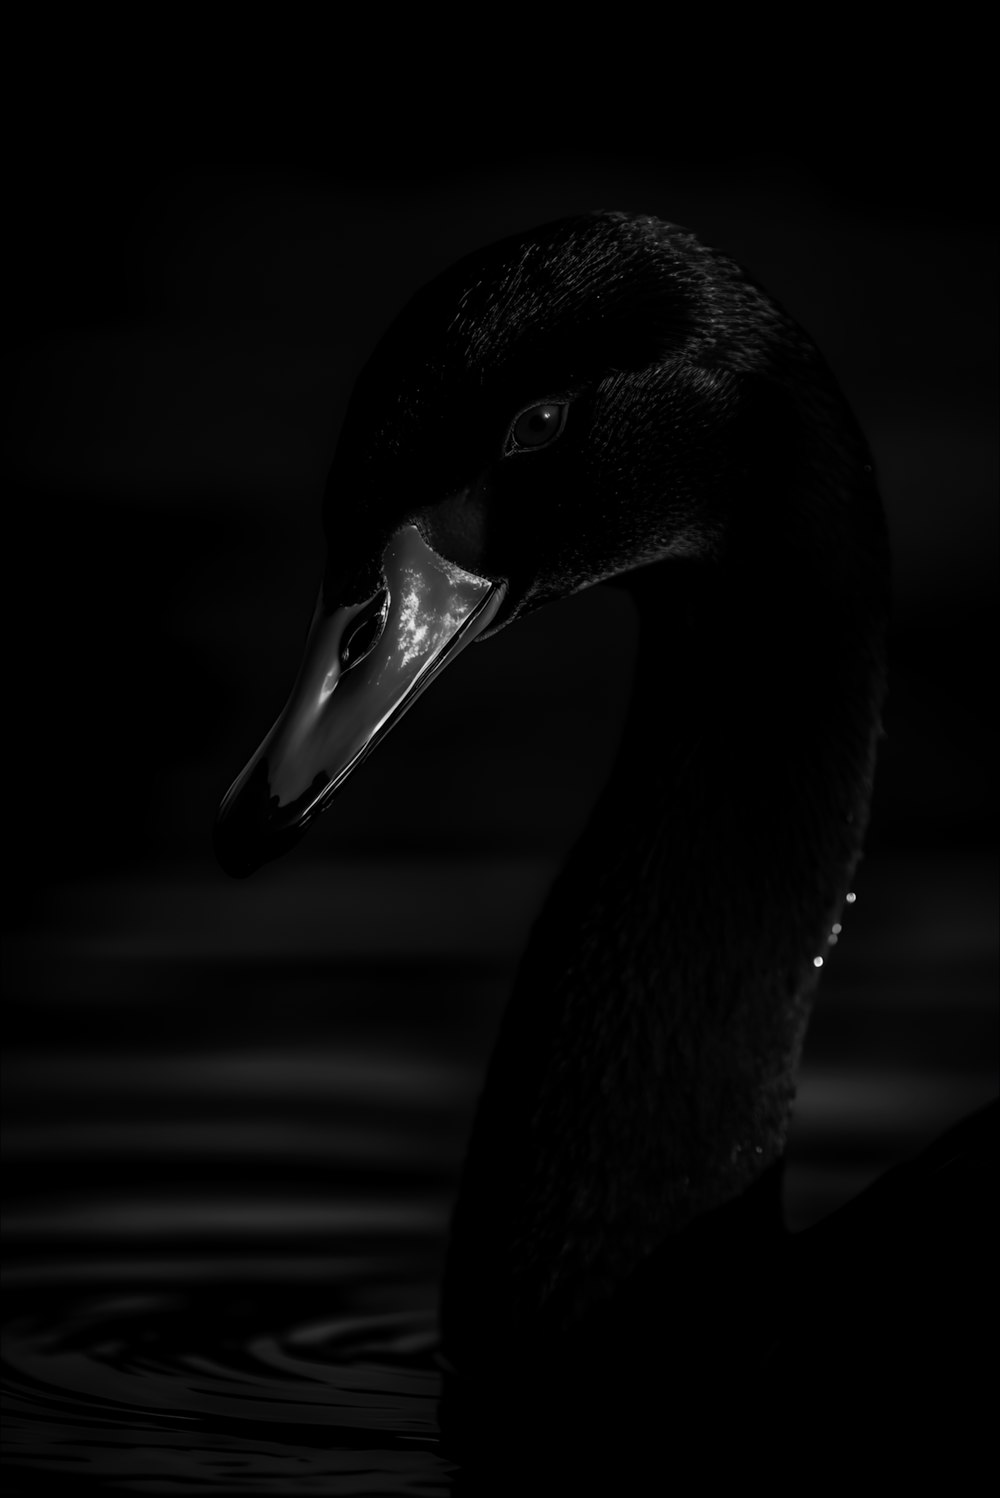 Una foto en blanco y negro de un pato en el agua